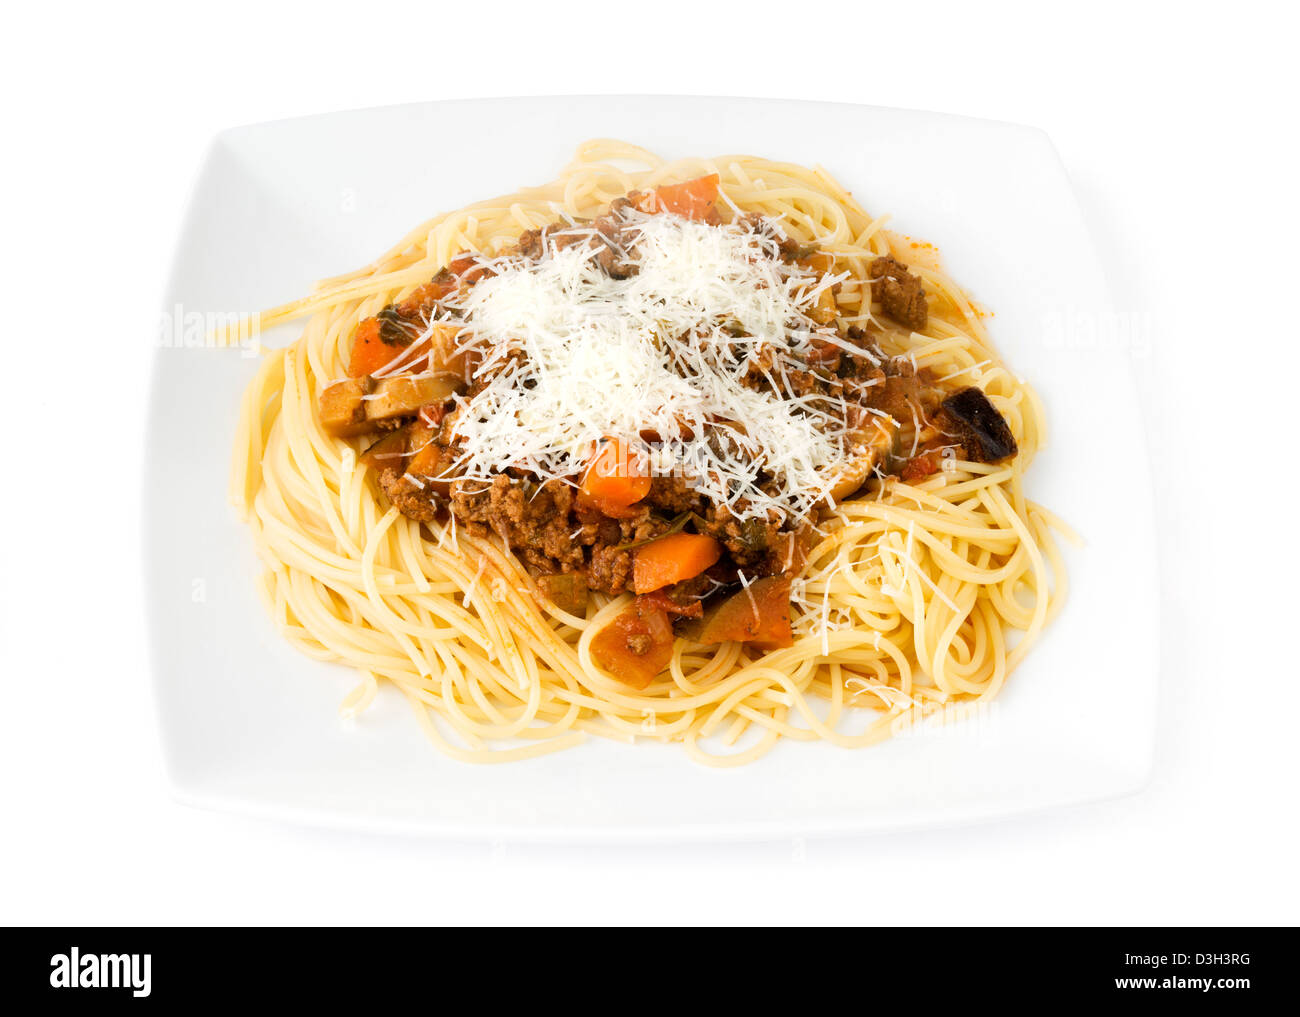 Plato de Bolognaise Spaghett casera con queso parmesano recién rallado Foto de stock